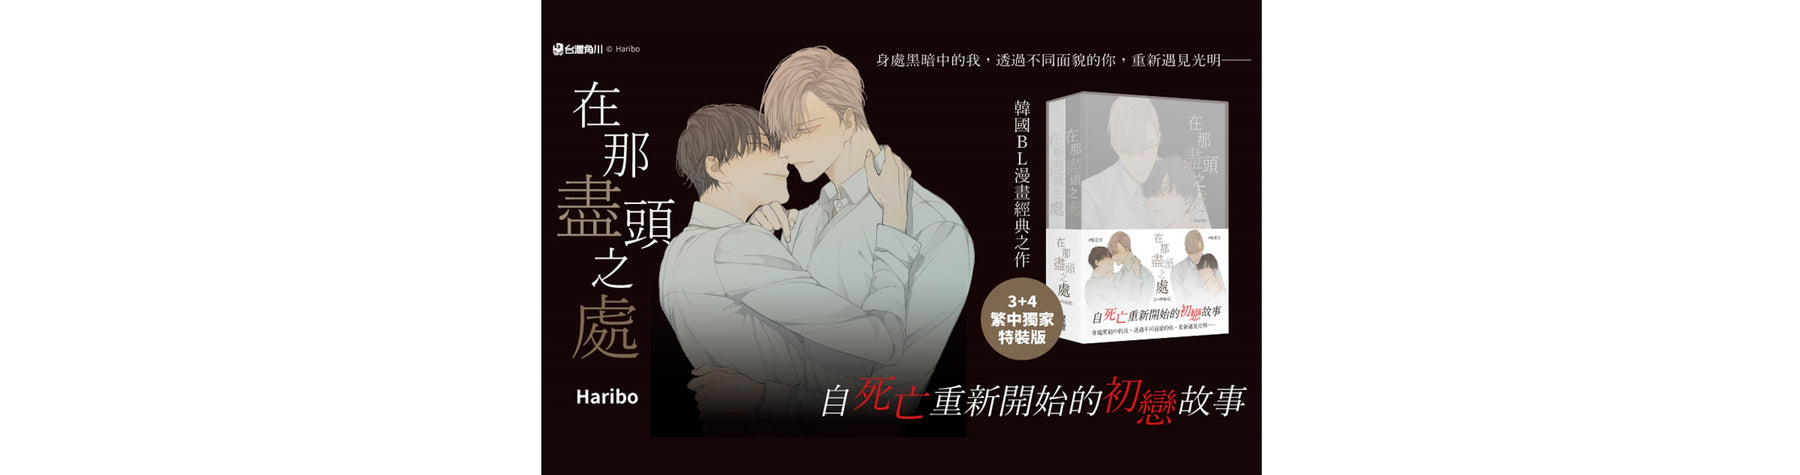 韓國BL漫畫經典之作 自死亡重新開始的初戀故事《在那盡頭之處》 將推出3+4(完)繁中獨家特裝版 10/19起限量預購，10/26感動上市